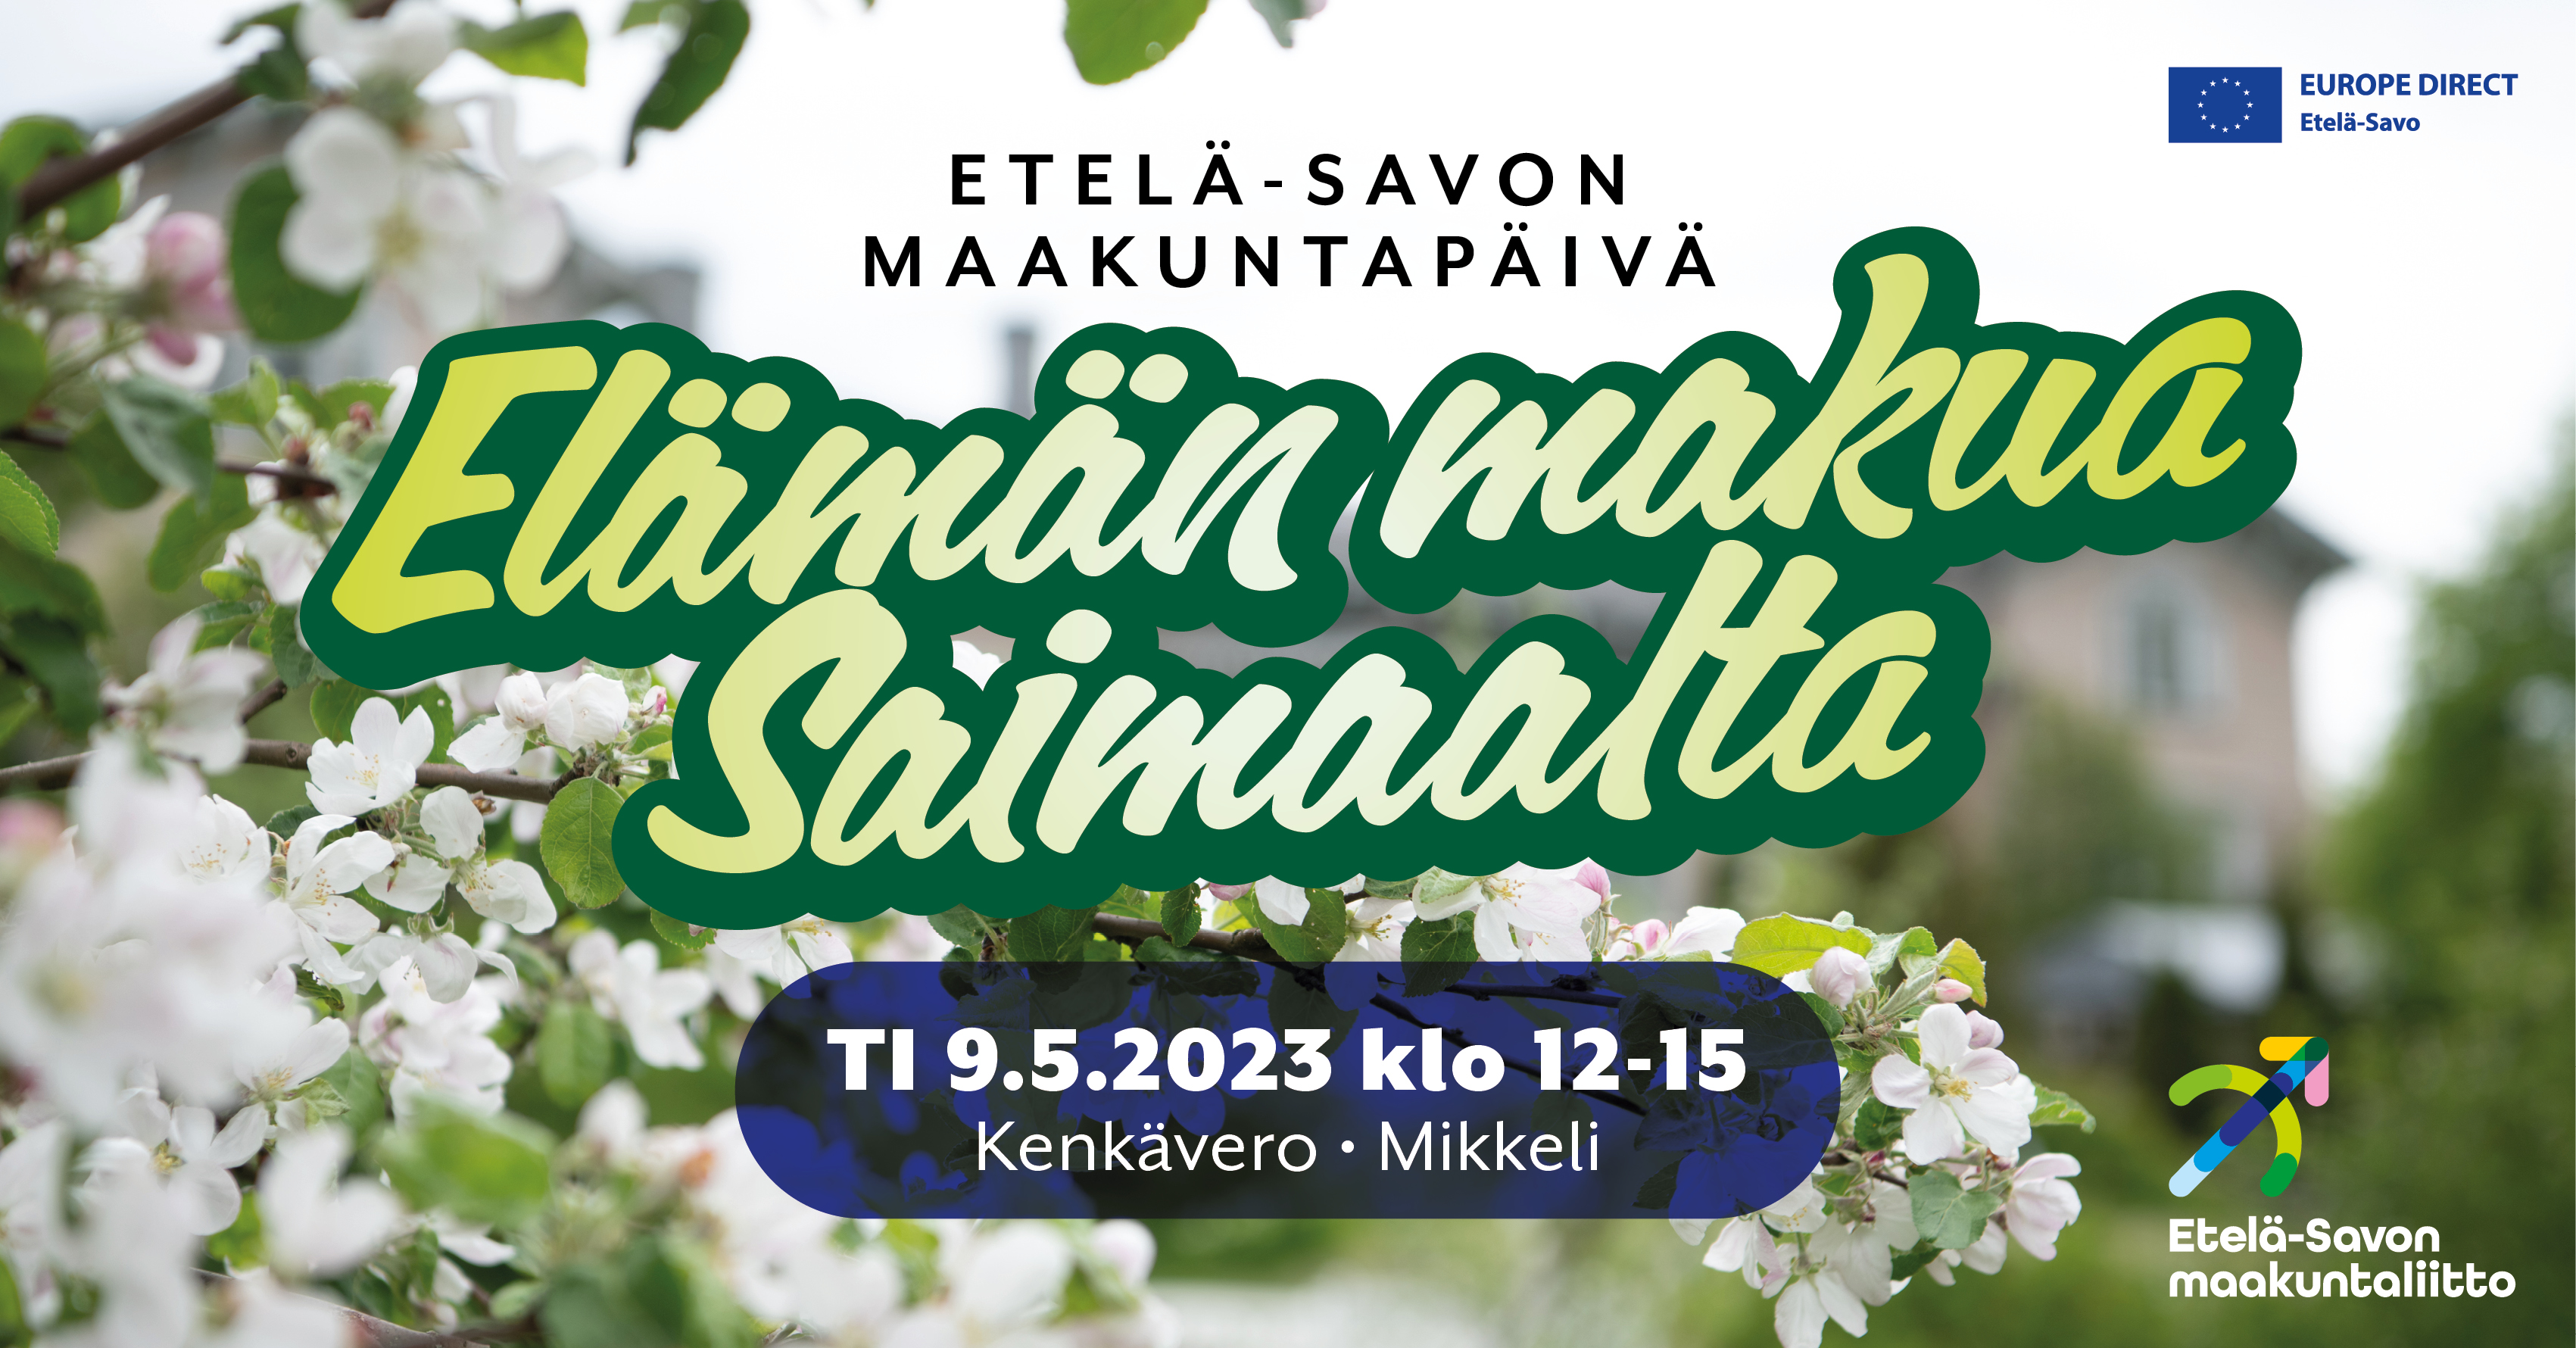 Etelä-Savon maakuntapäivää ja Eurooppa-päivää vietetään ti 9.5. klo 12-15 Mikkelissä, Kenkäverossa